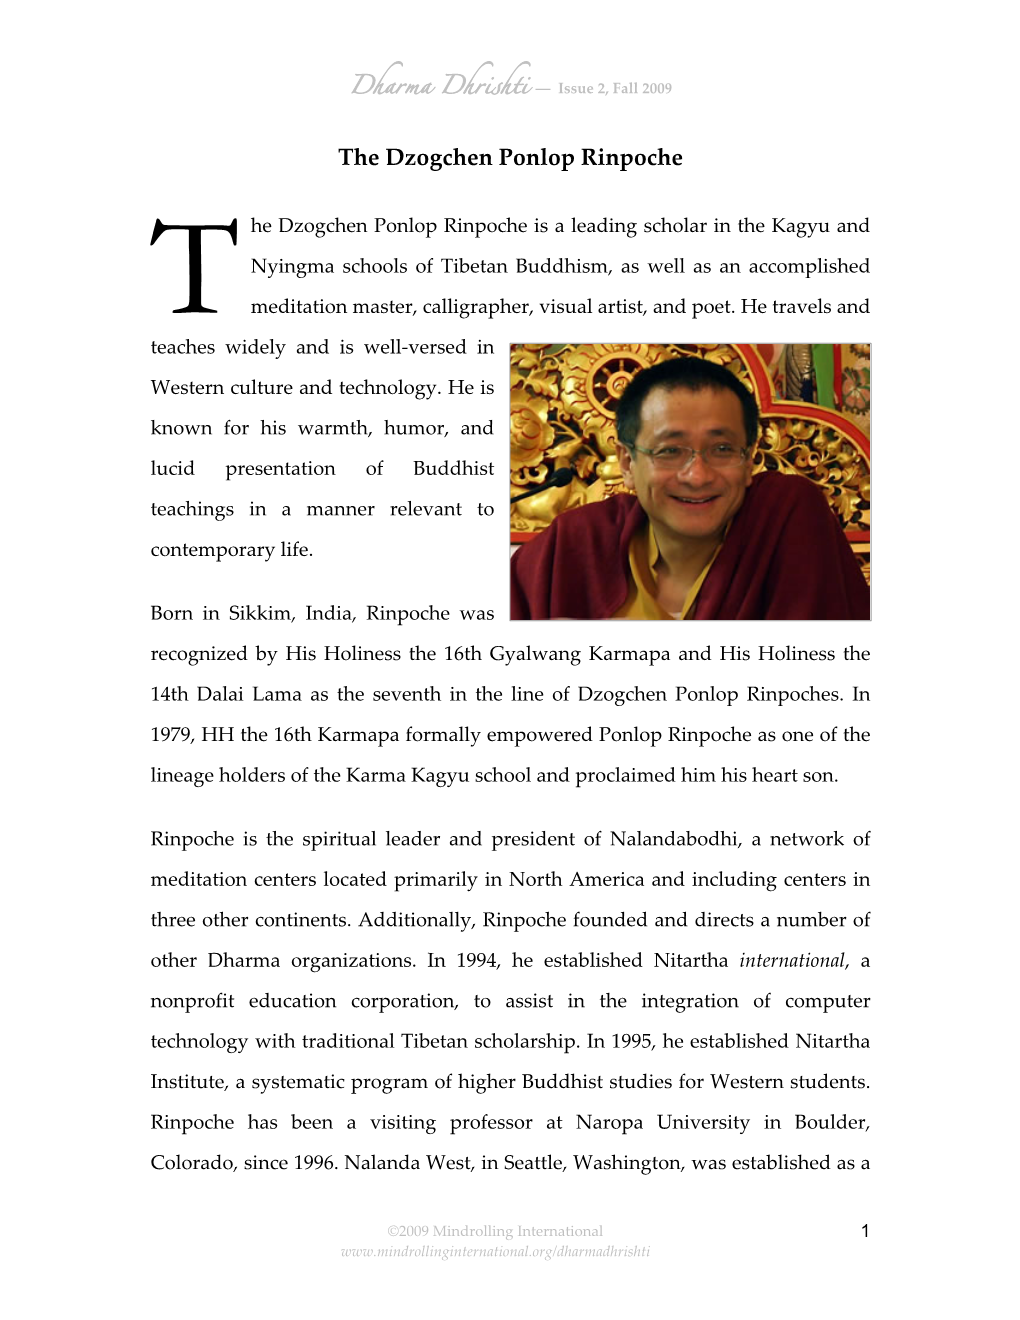 Dzogchen Ponlop Rinpoche-Biography